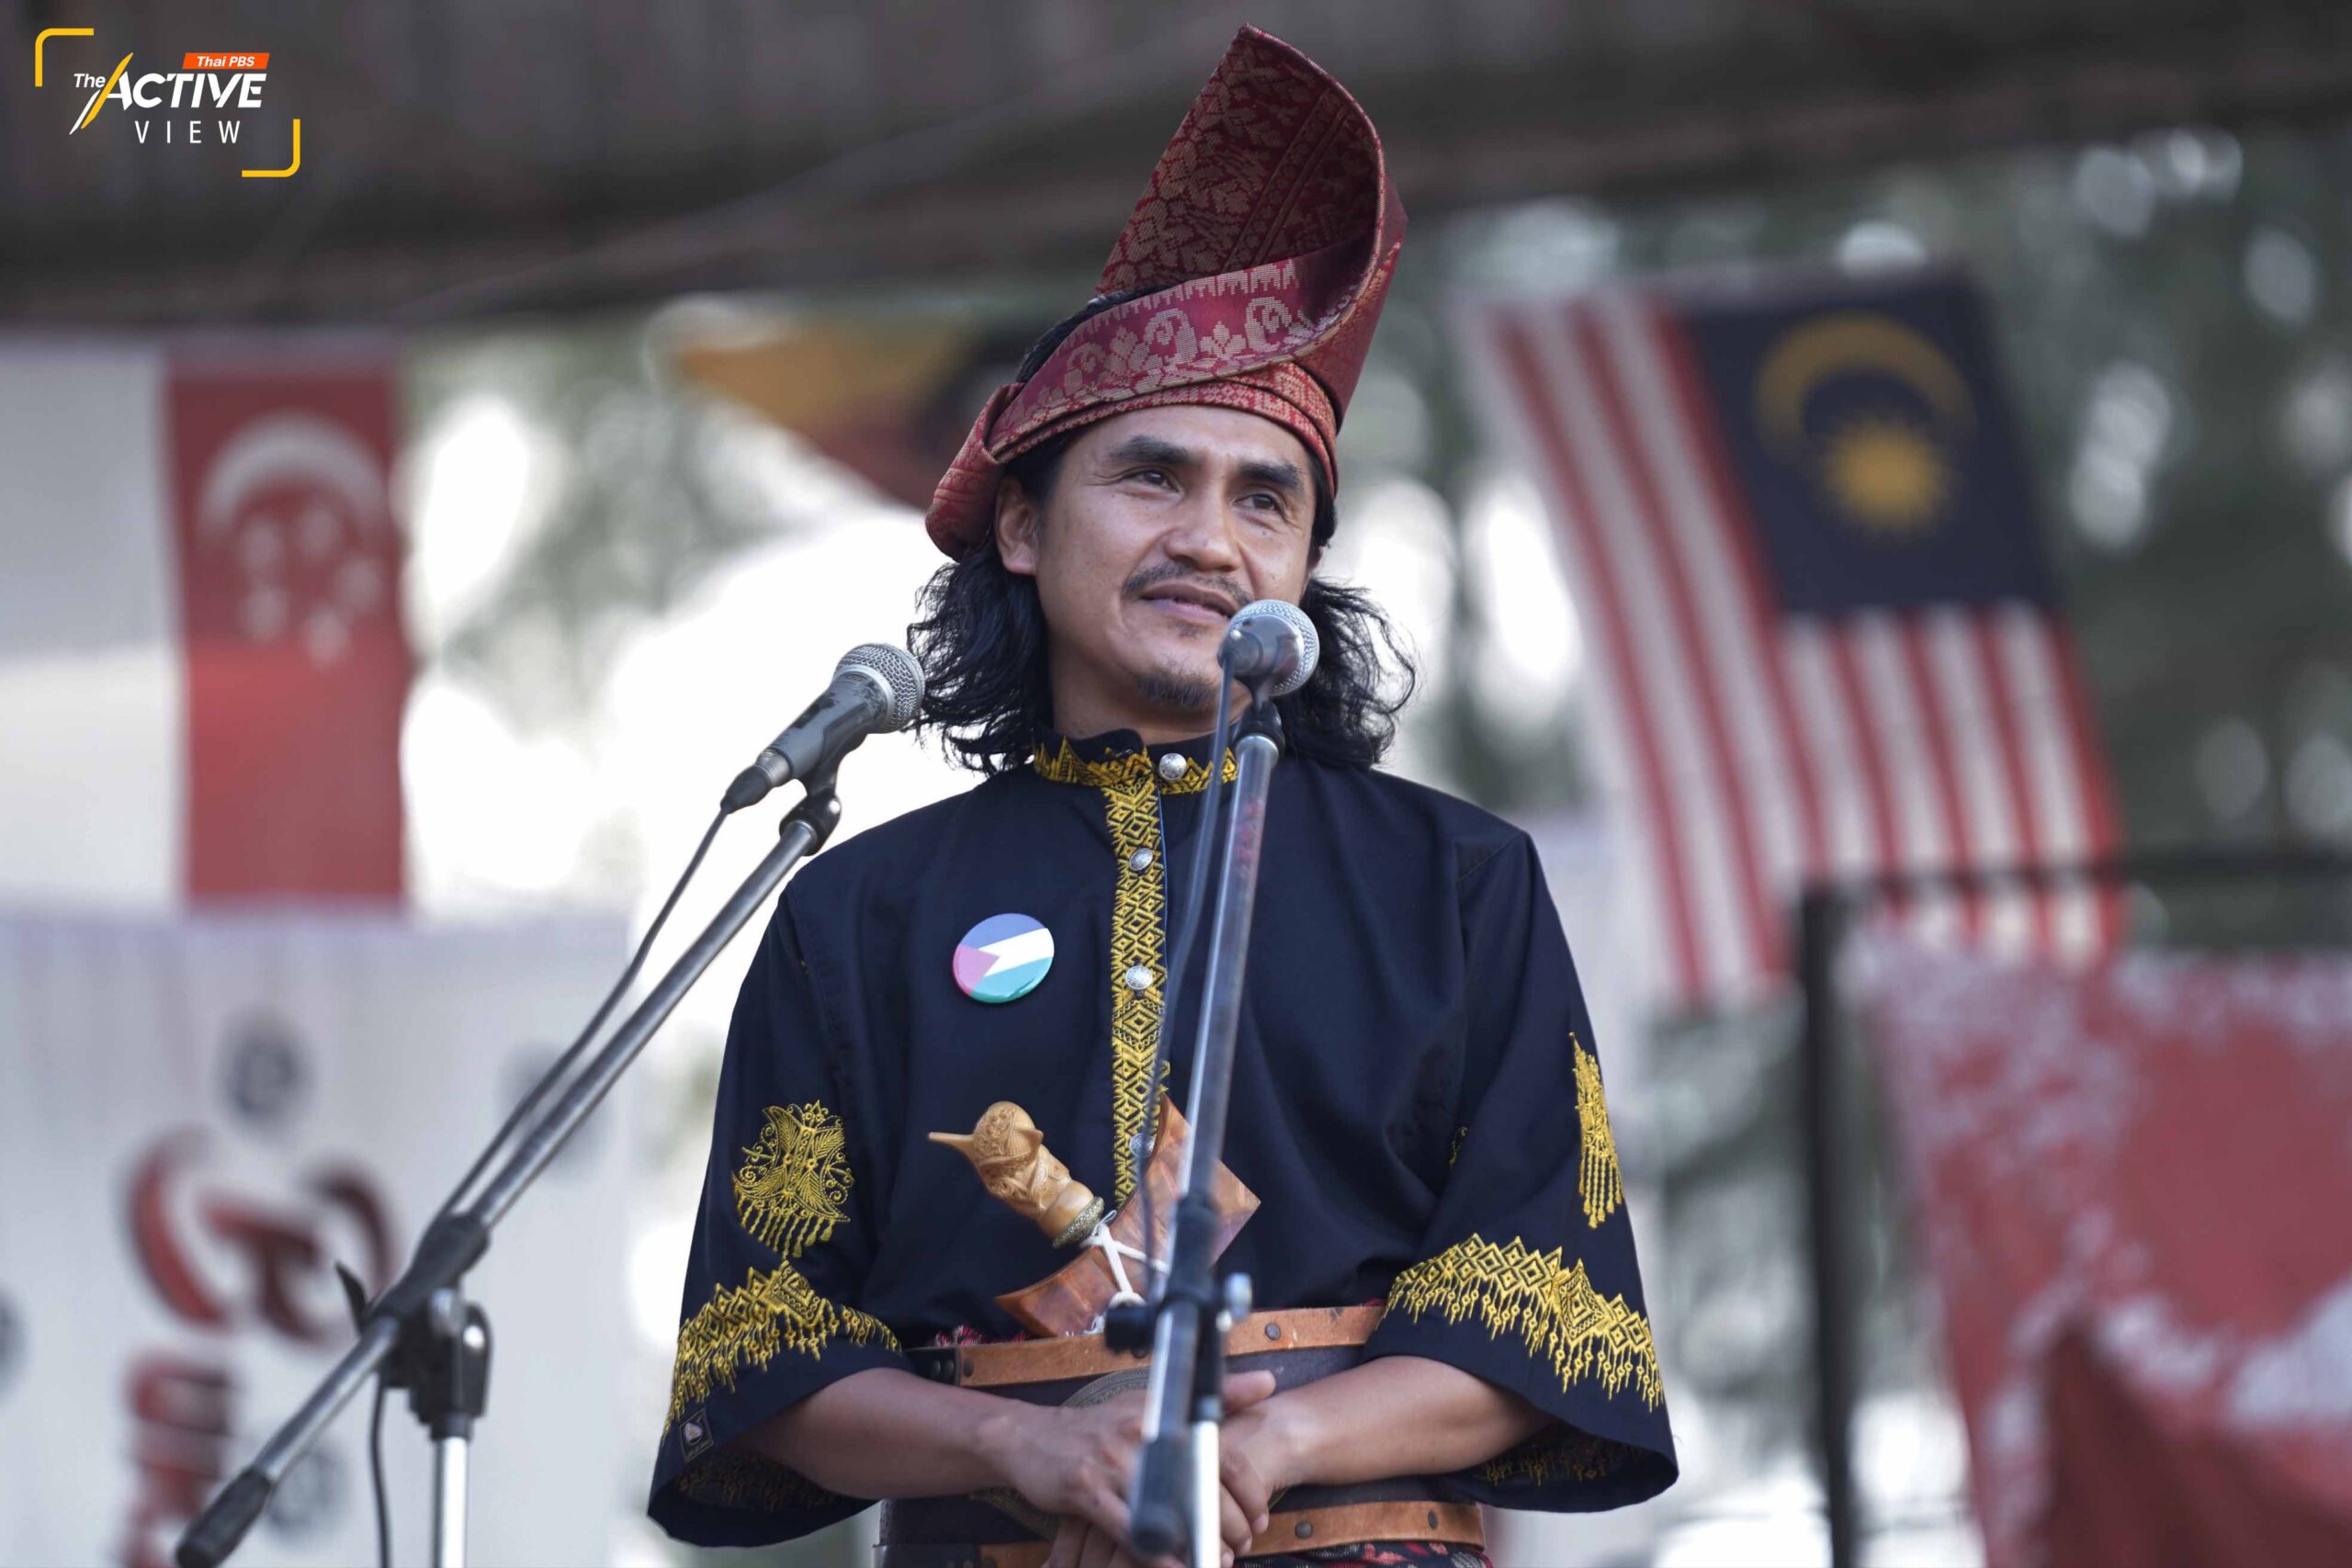 ‘มูฮัมหมัดอาลาดี เด็งนิ’ ที่ปรึกษาสมัชชาประชาสังคมเพื่อสันติภาพ ในฐานะของผู้จัดงาน Melayu Raya 2024 ขึ้นกล่าวสุนทรพจน์ เน้นย้ำว่า “เรายังคงแสวงหาสันติภาพ เราต้องตั้งเป้าหมายให้ได้ว่าเราจะตามหาสันติภาพกันให้เจอ แม้ว่ามันเหมือนจะอยู่ในป่าลึก ที่แทบมองไม่เห็นทางออก แต่เราต้องยึดมั่นสันติภาพในใจเราให้ได้” 
